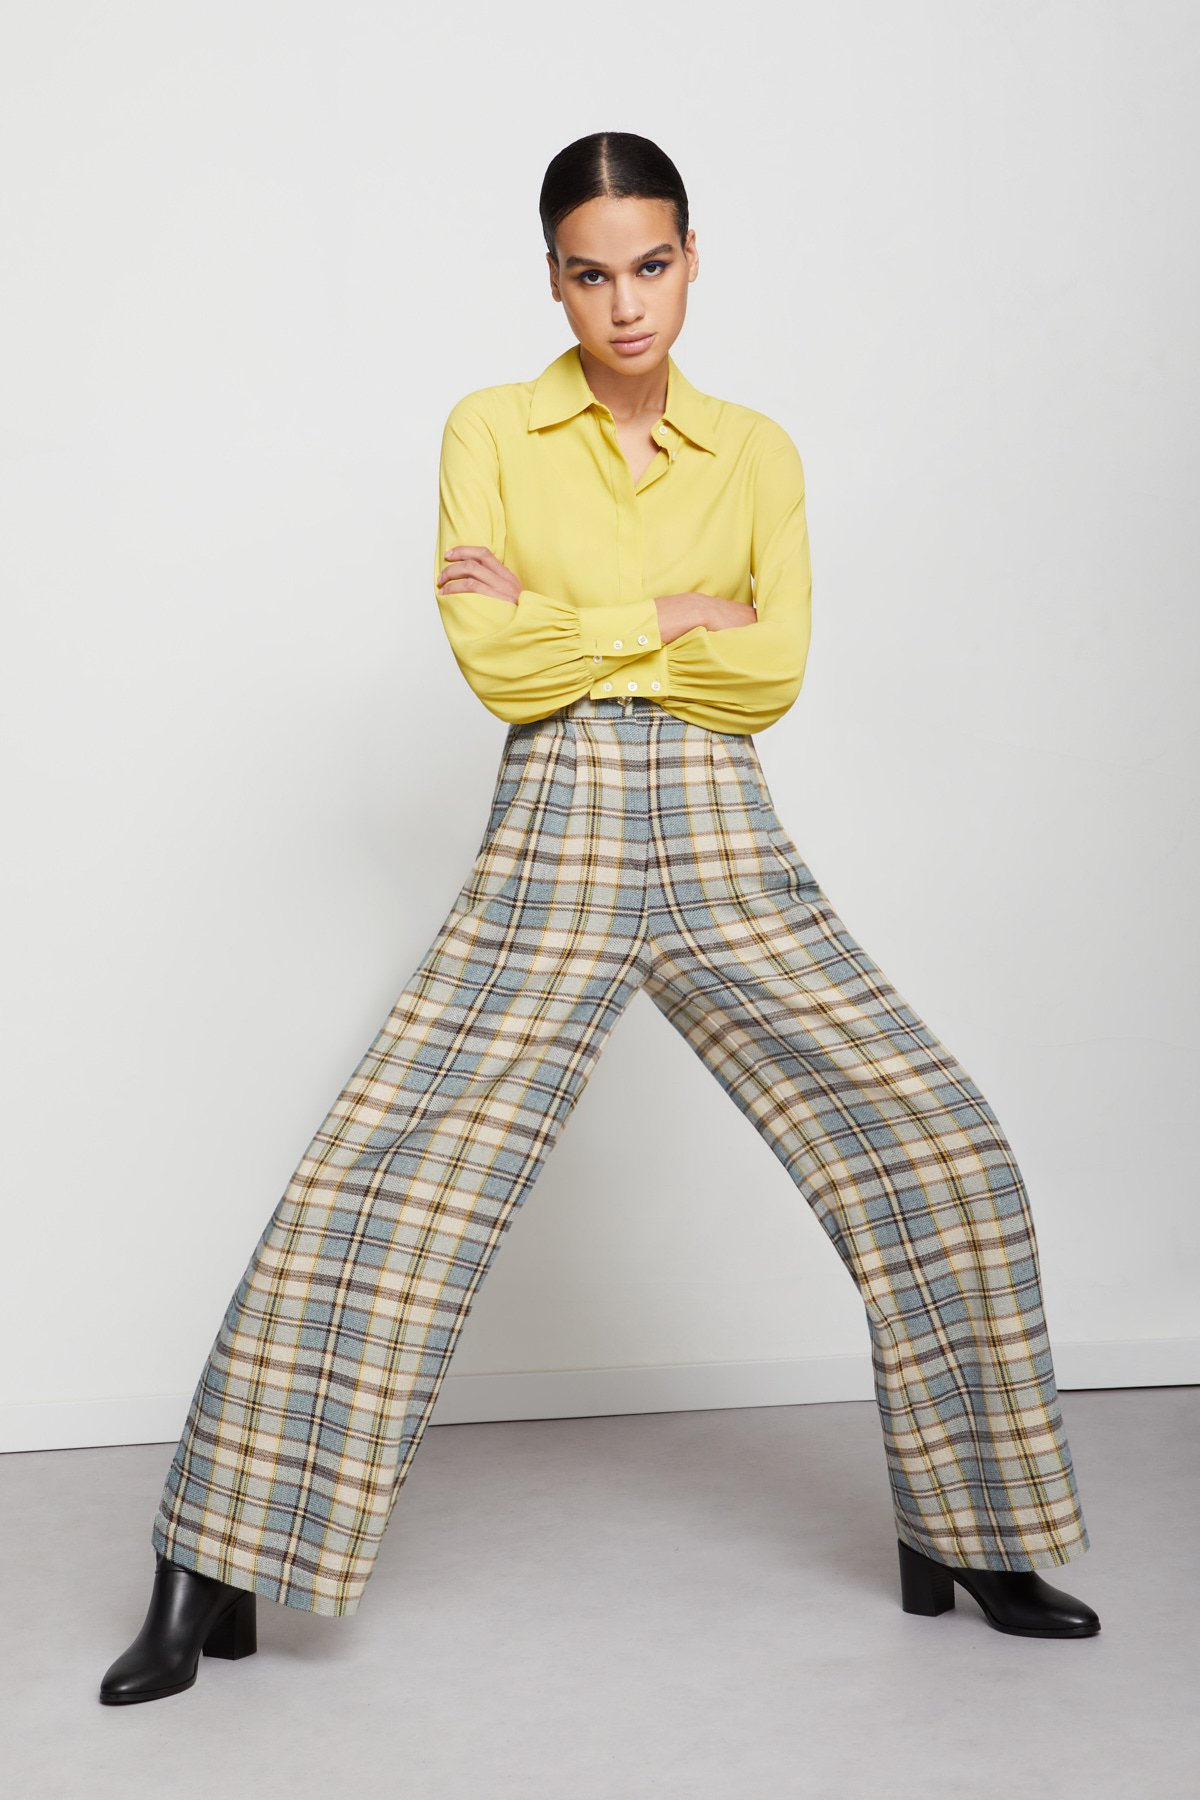 Zara tartan trousers & #ThisOldThing - thankfifi